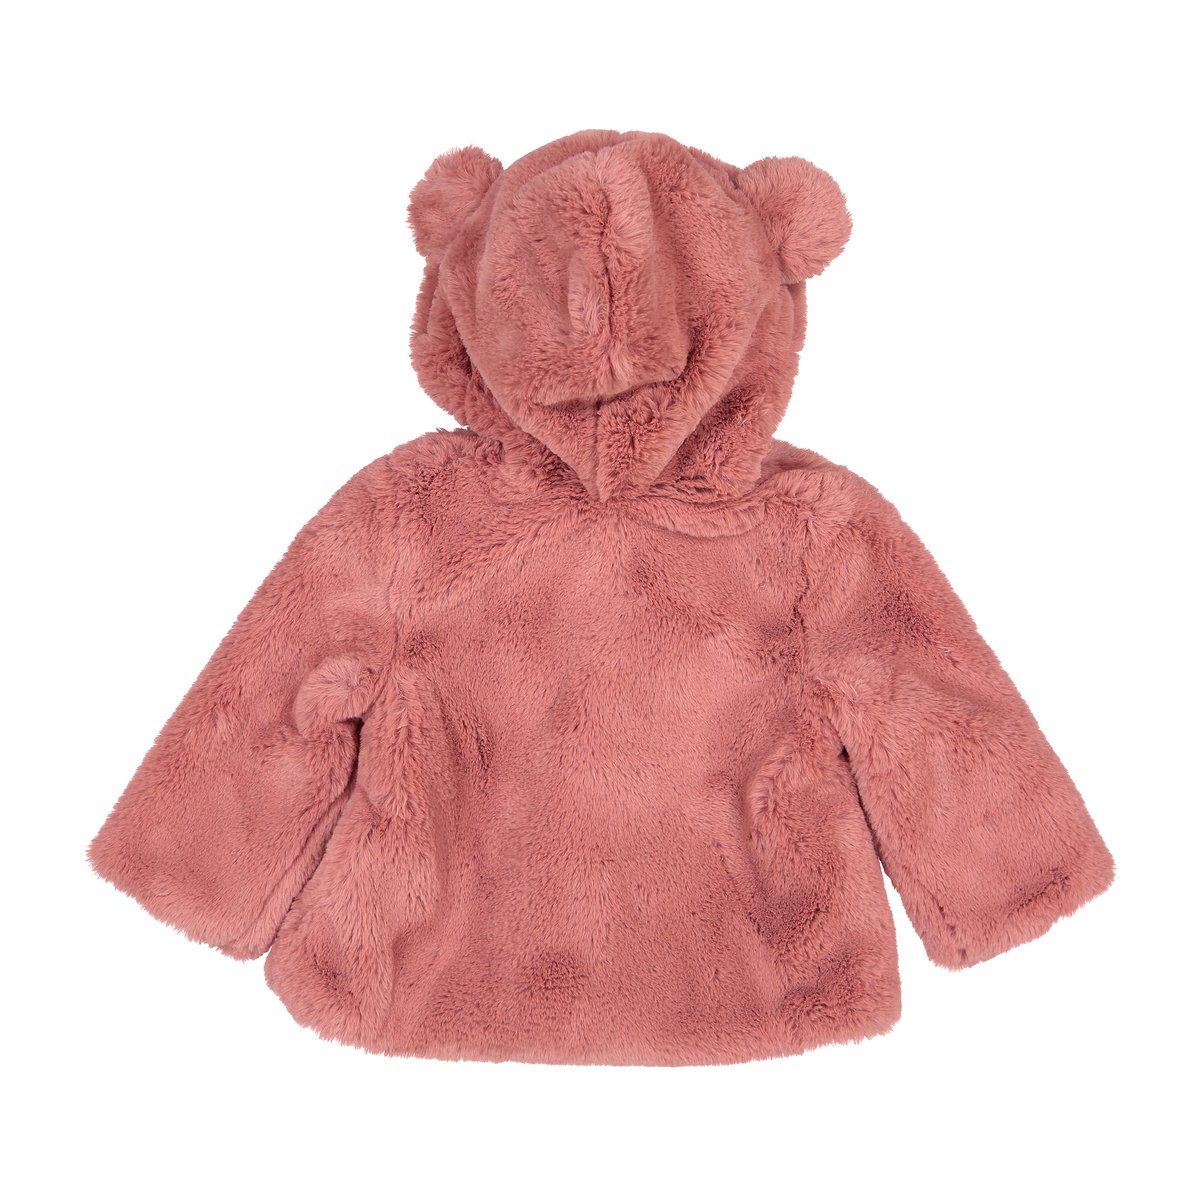 Пальто La Redoute Из искусственного меха с капюшоном  мес - года 18 мес. - 81 см розовый, размер 18 мес. - 81 см - фото 2